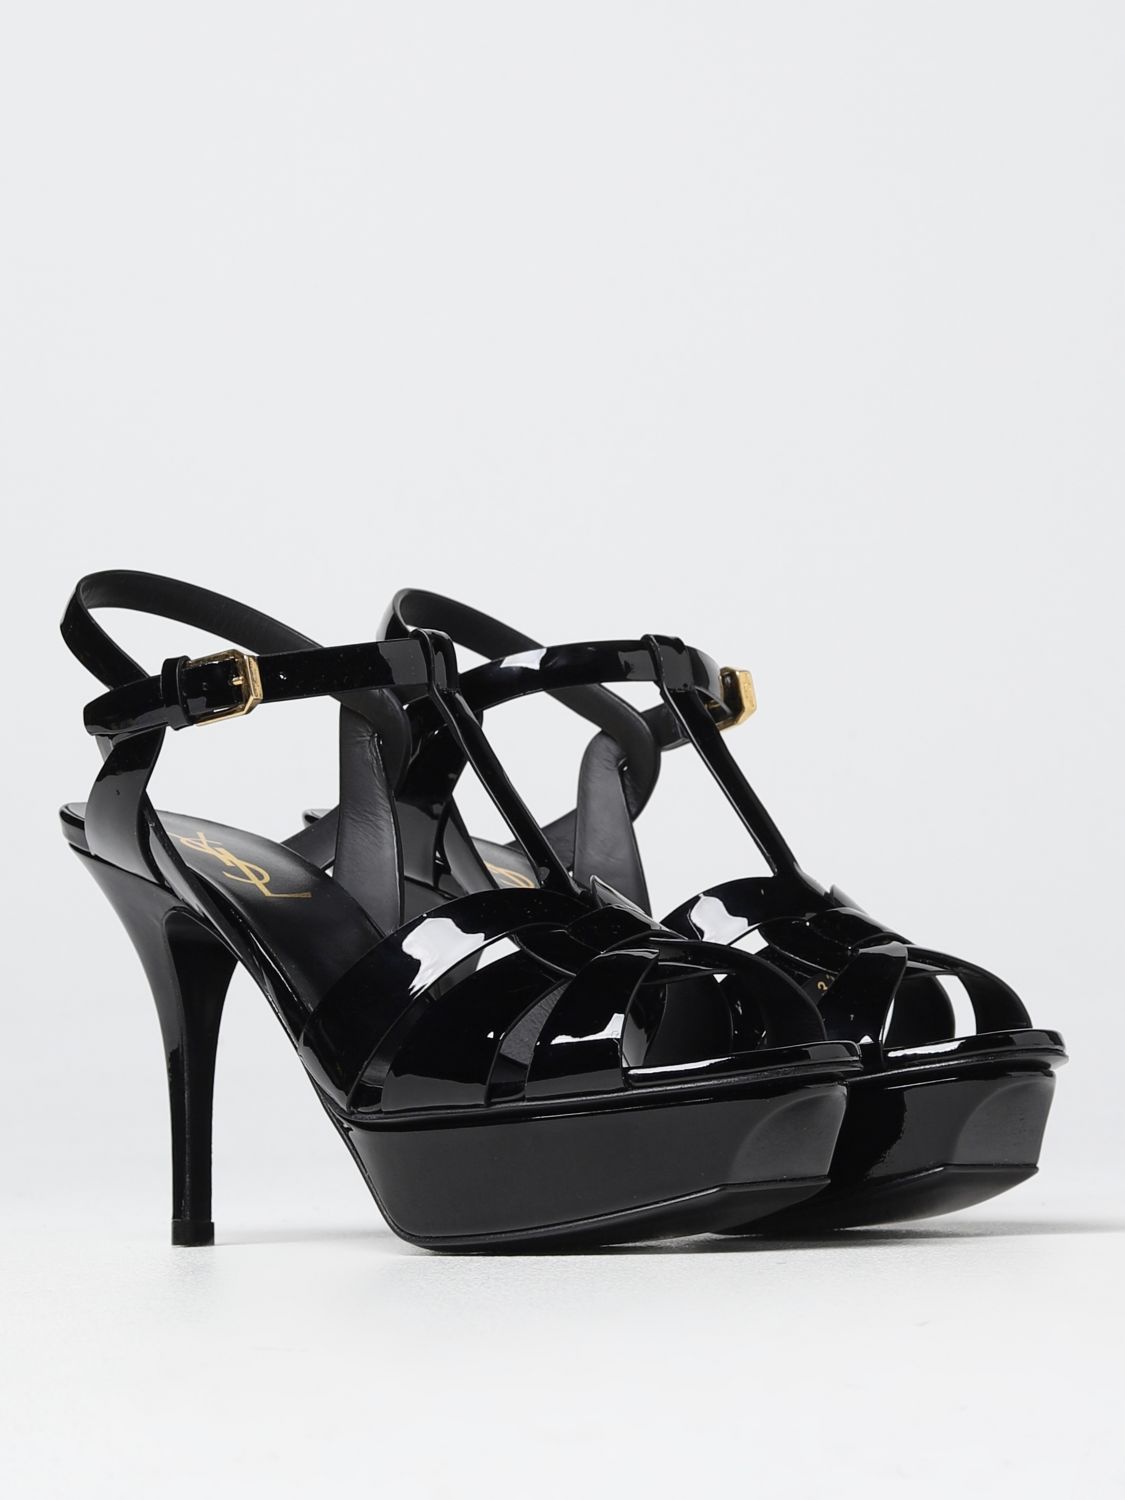 SAINT LAURENT: Tribute sandals in patent leather - Black | Saint ...